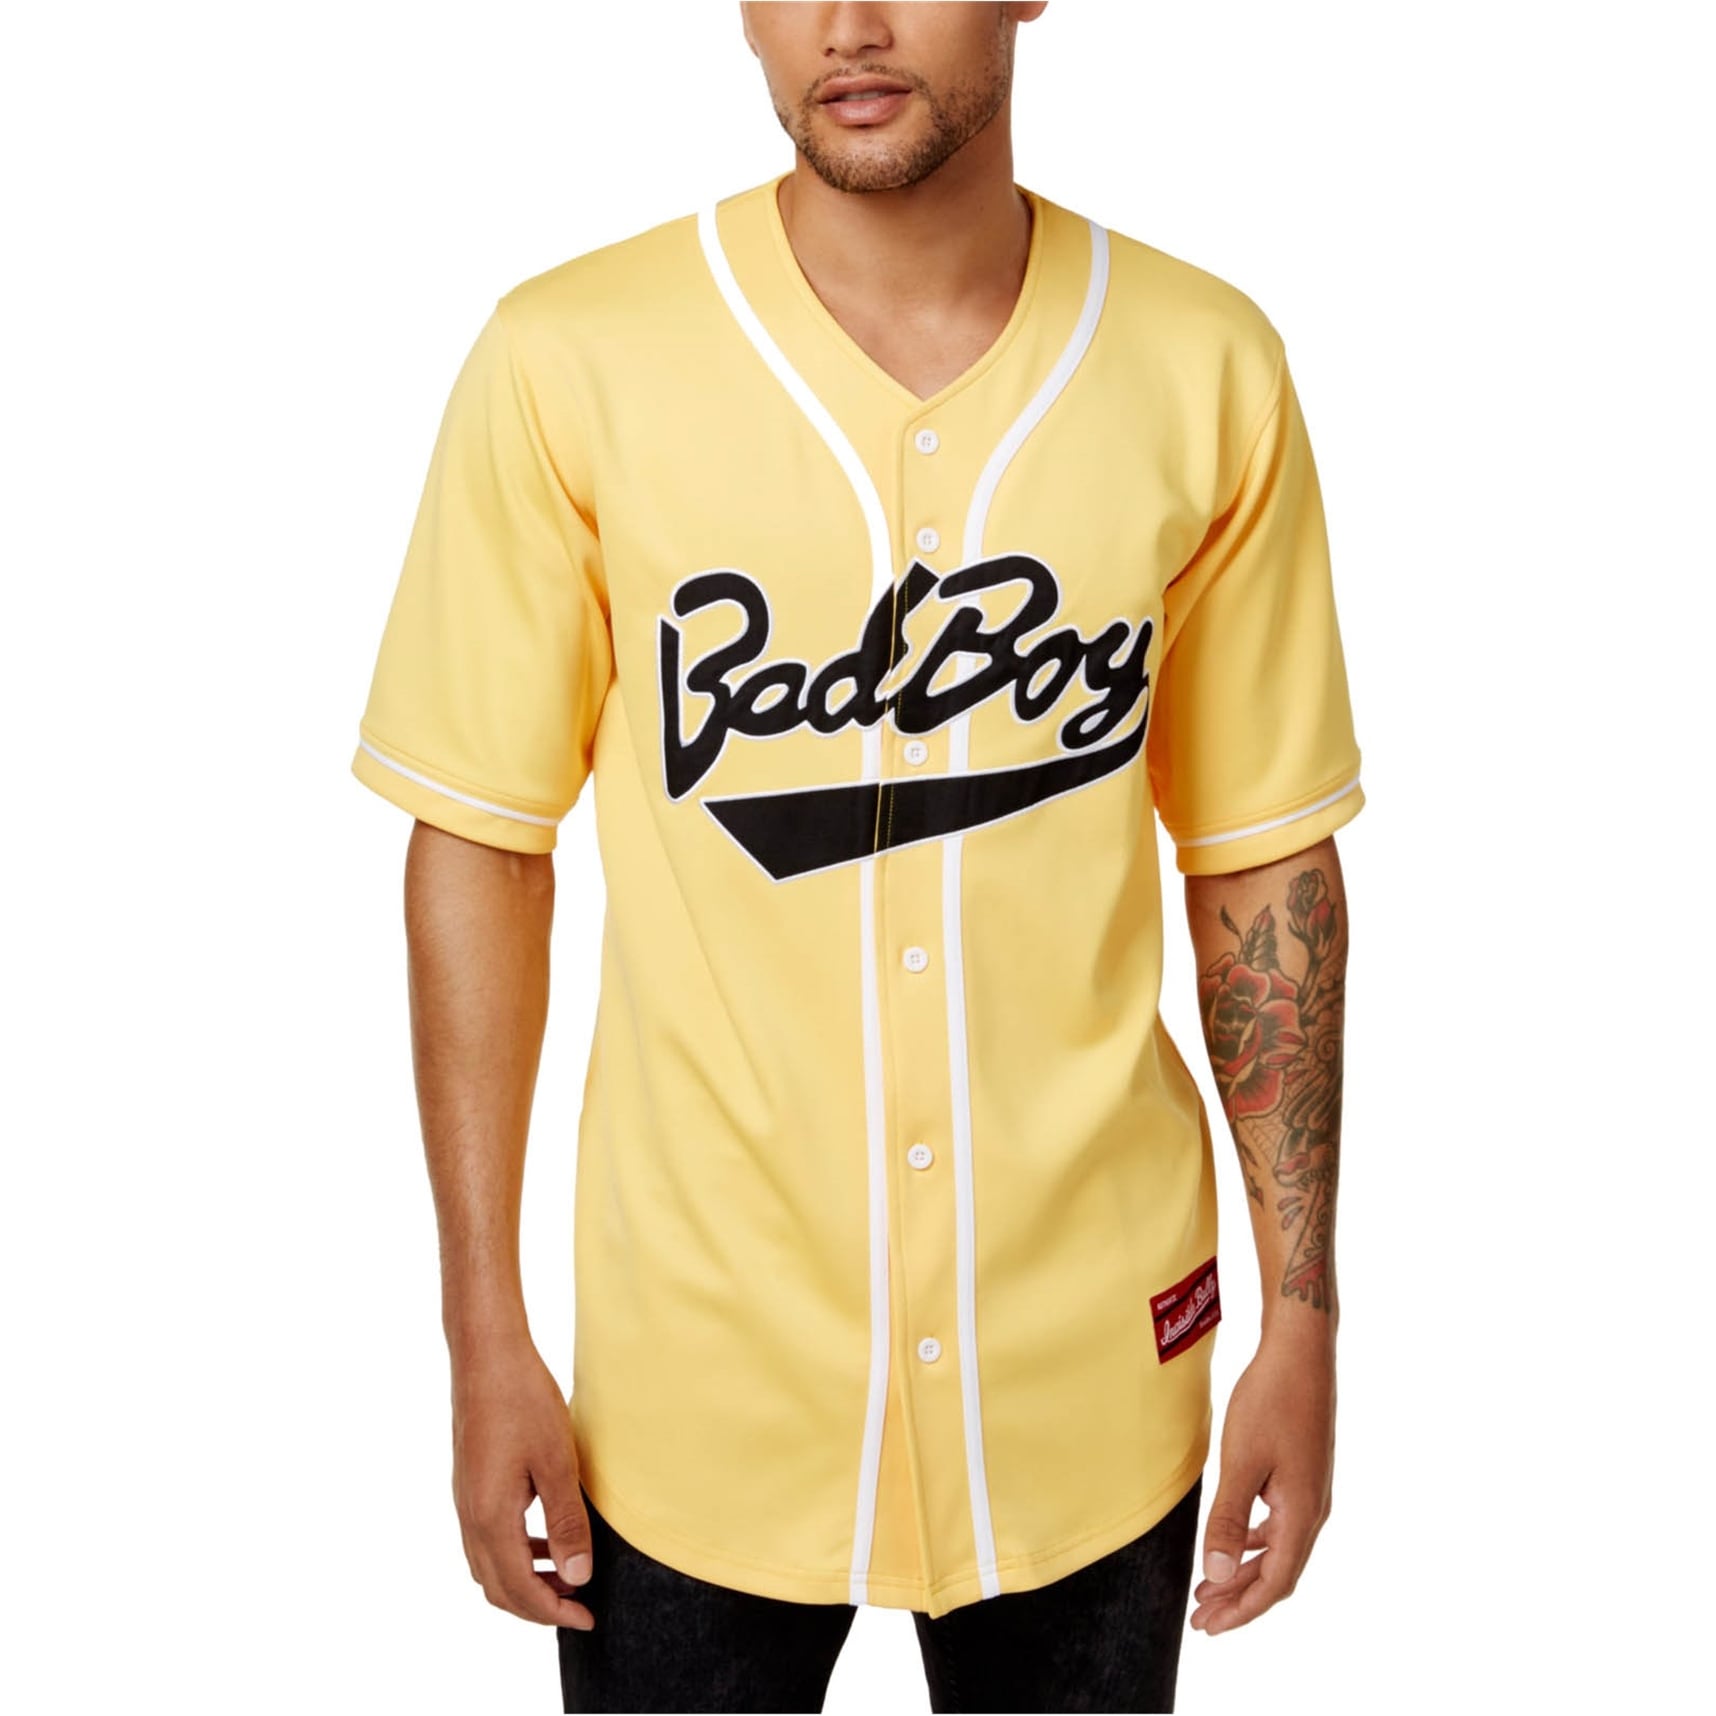 baseball jersey style shirts mens